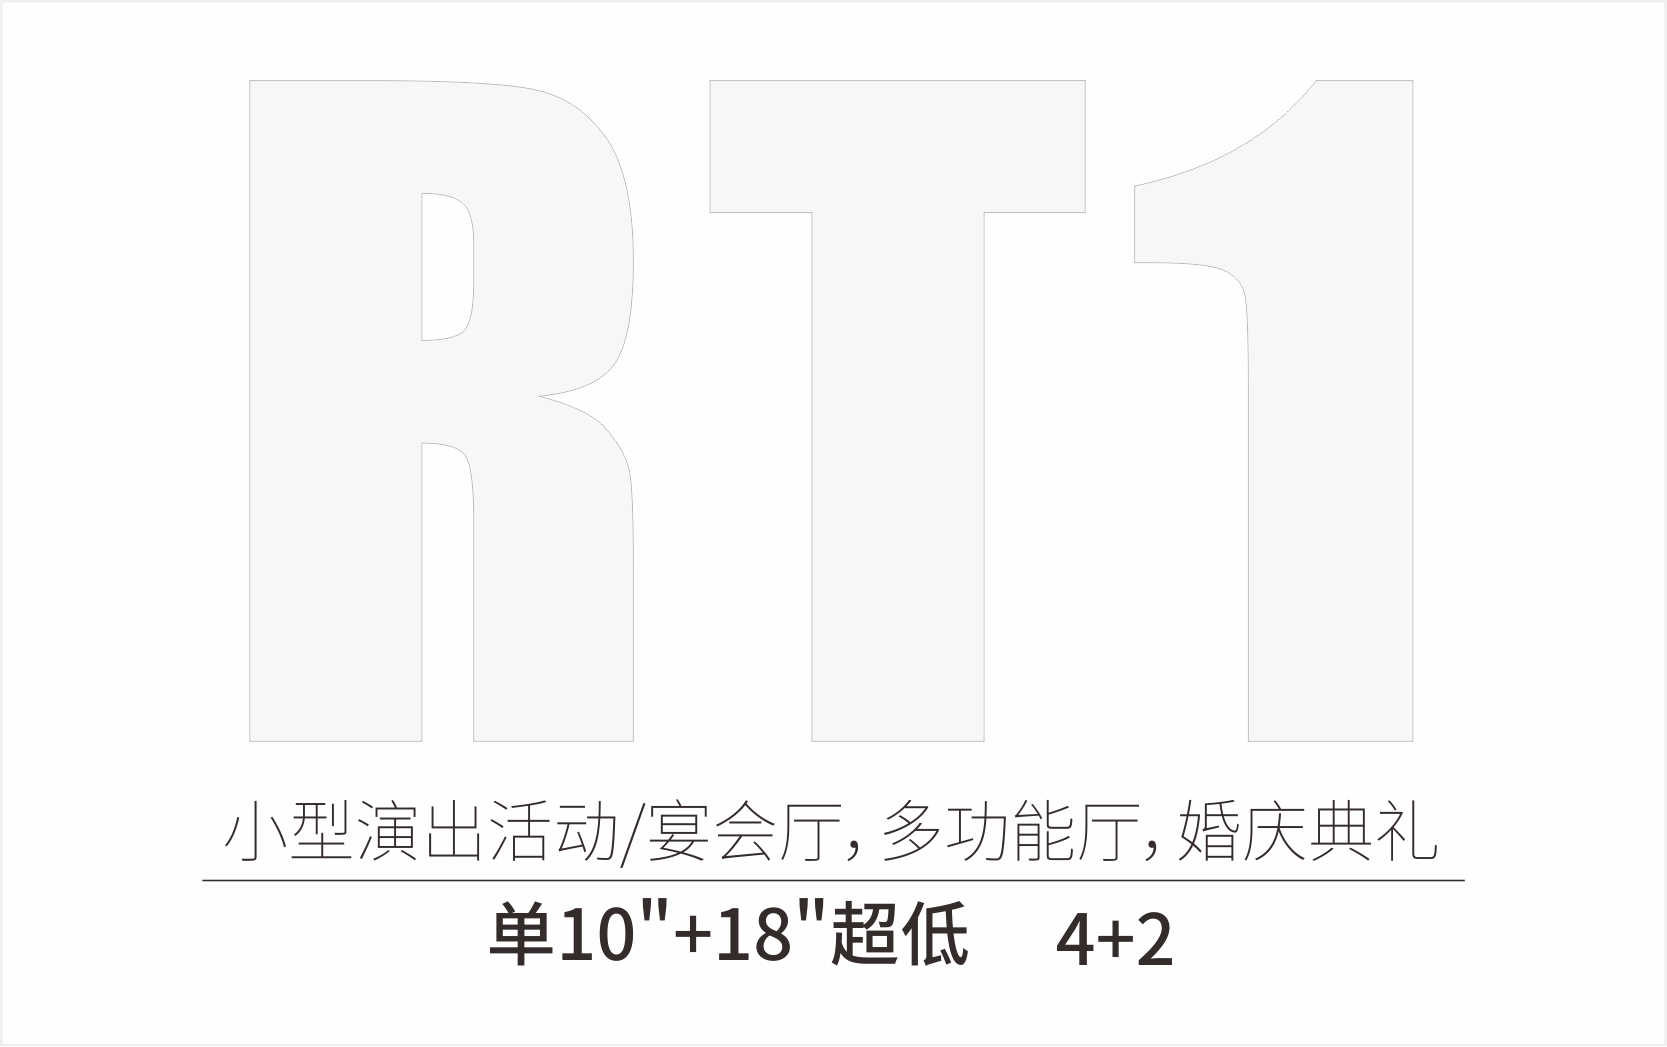 RT1 4+2